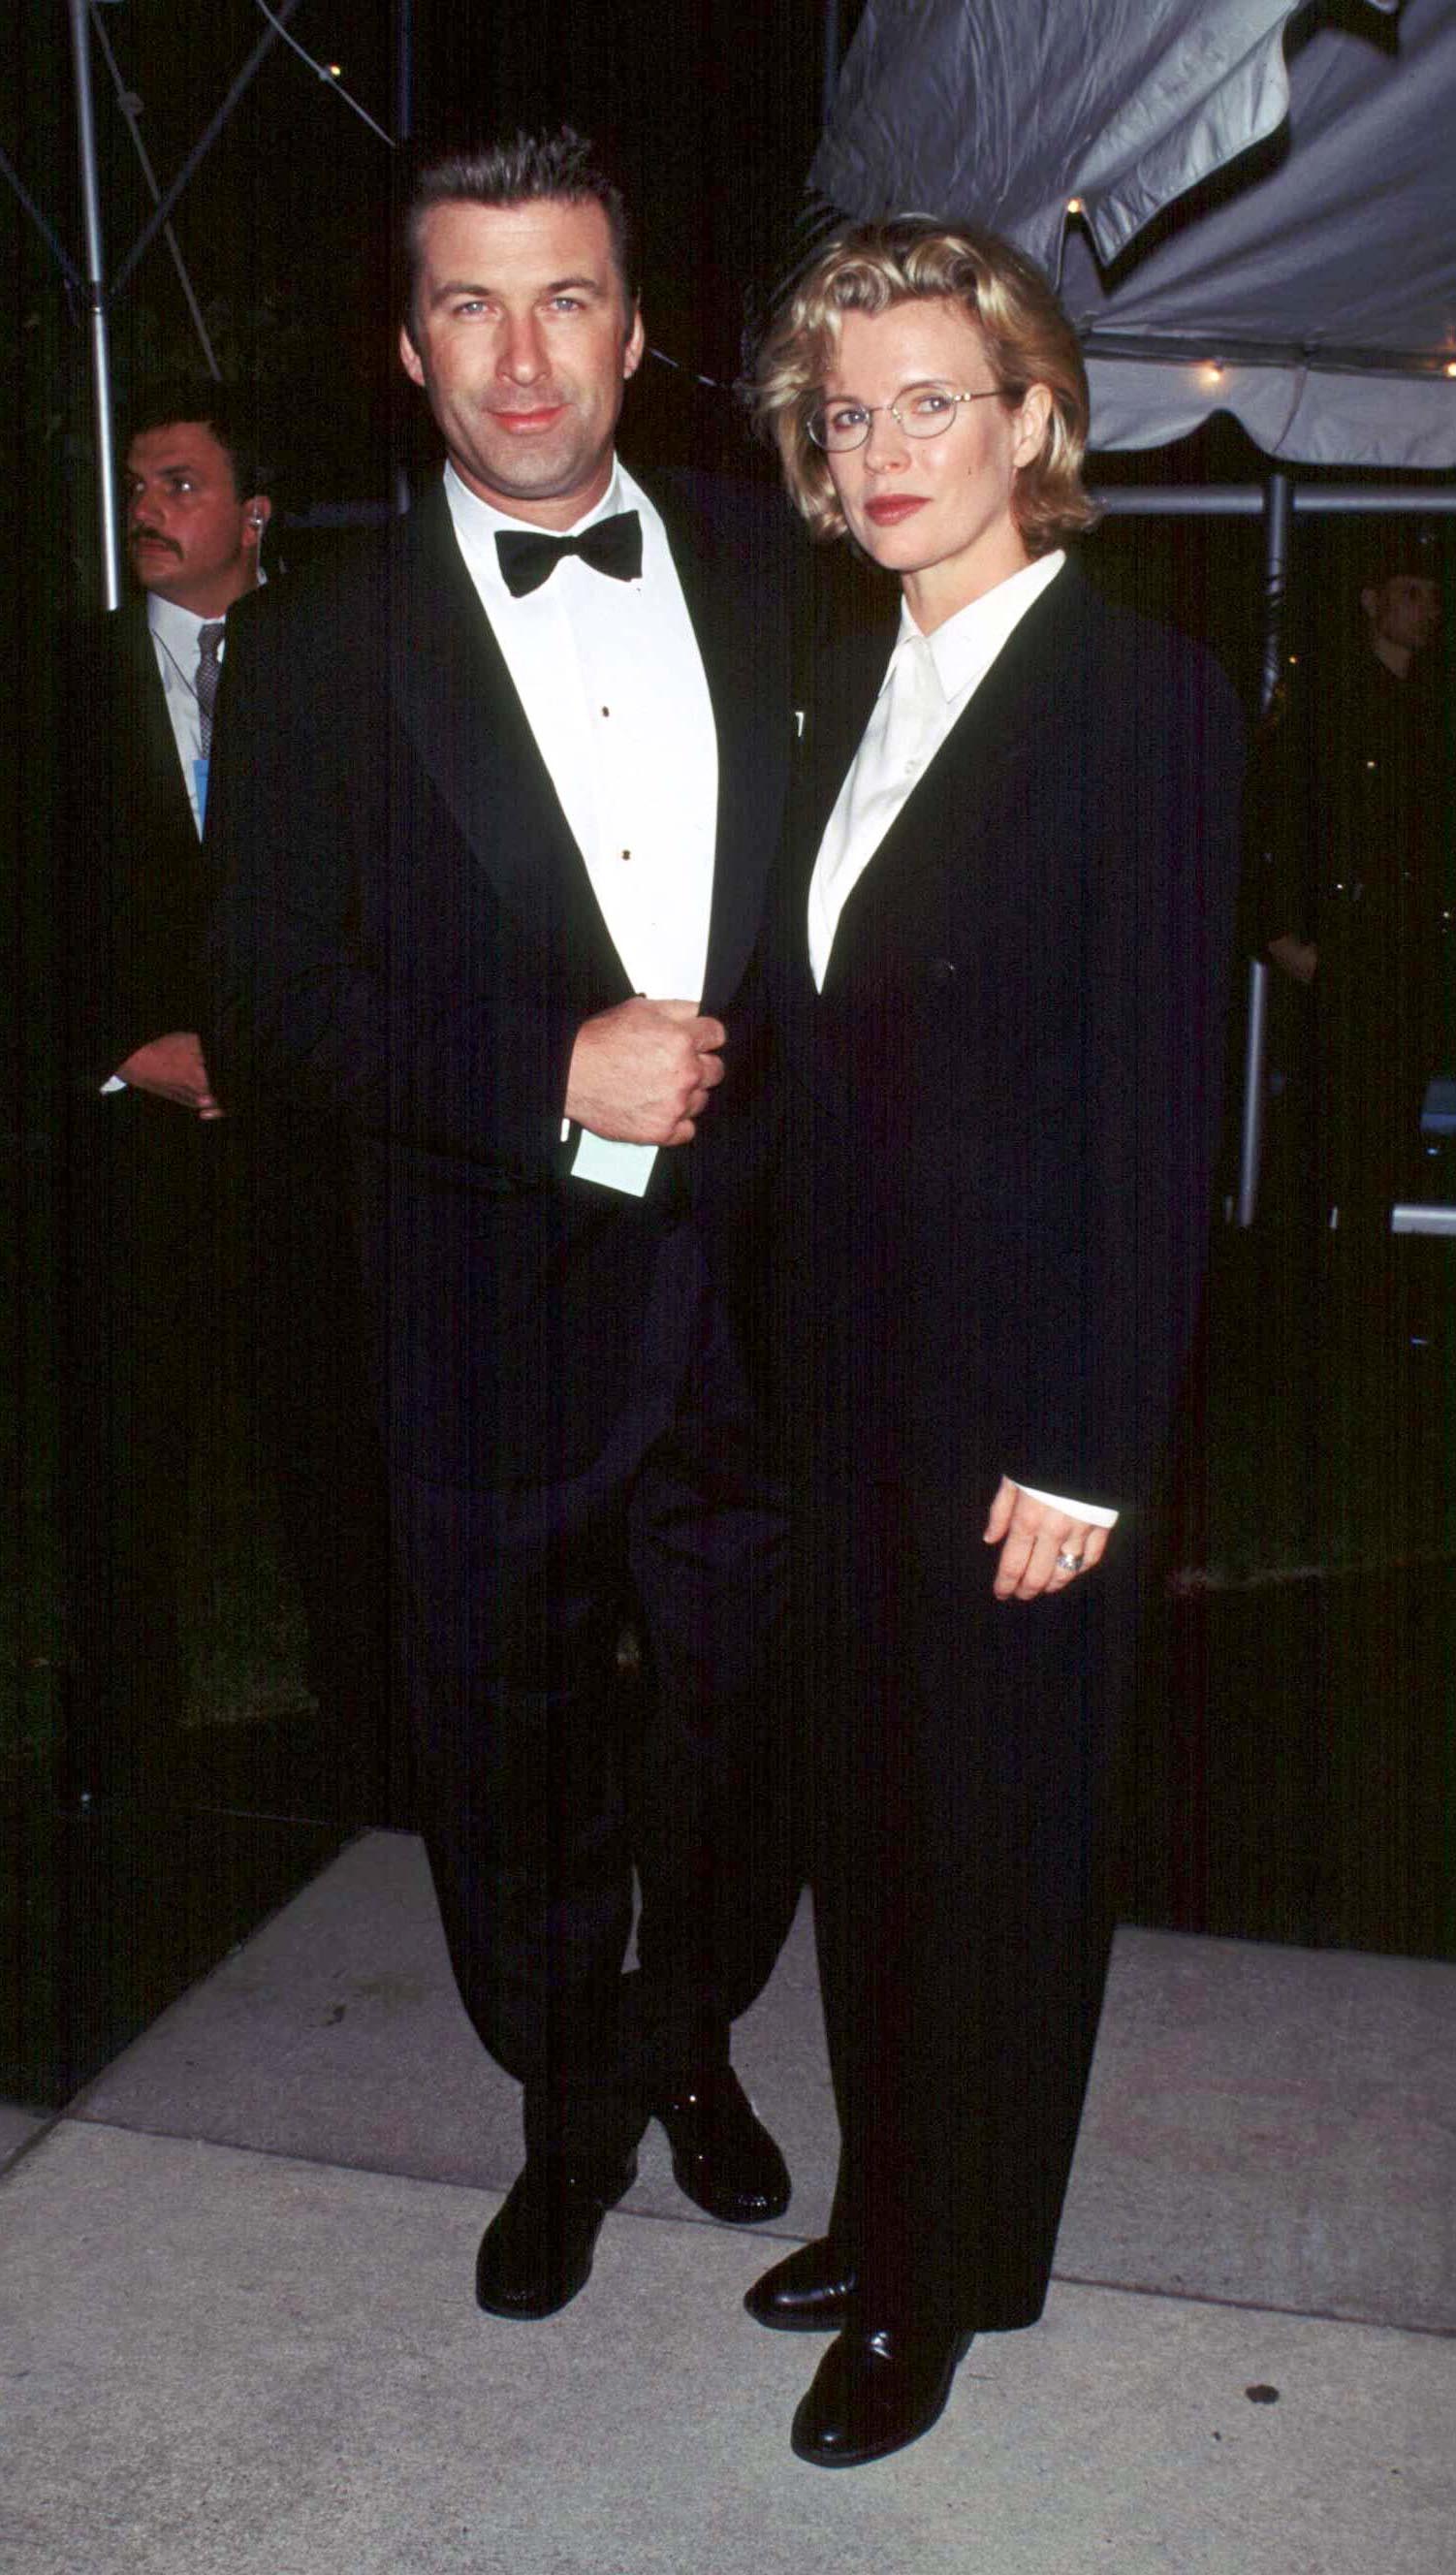 Los actores Alec Baldwin y Kim Basinger se casaron en 1993, en 1995 tuvieron a su única hija, Ireland, se separaron en 1998 y en 2002 iniciaron un divorcio escandaloso (Shutterstock)